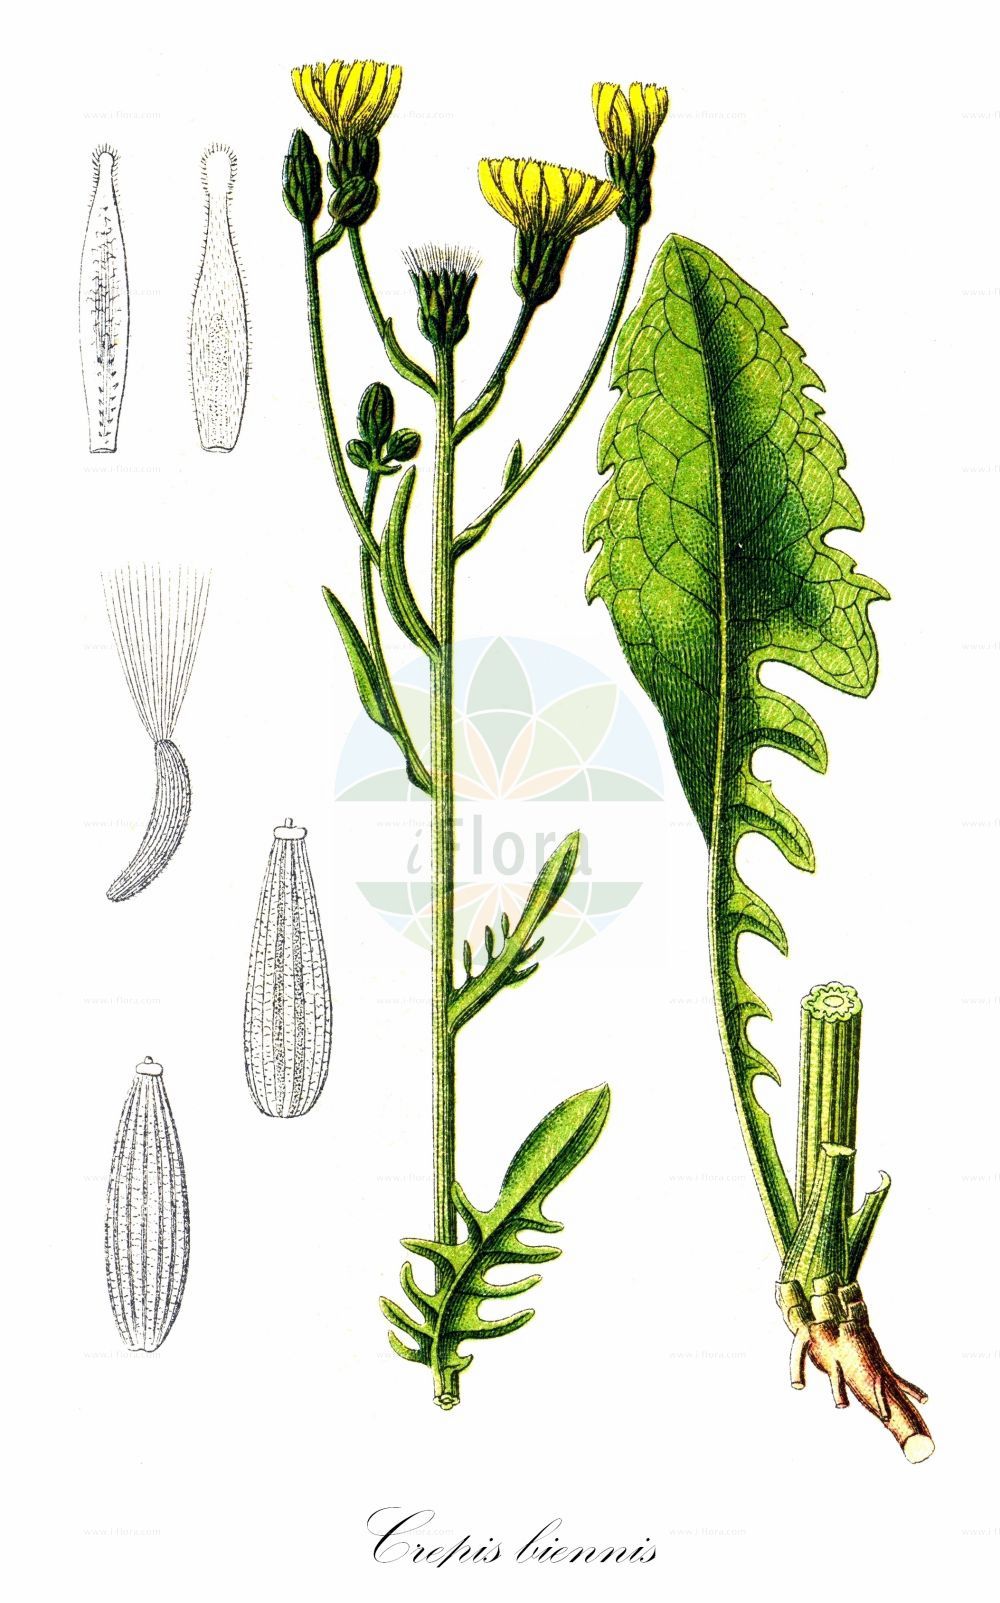 Historische Abbildung von Crepis biennis (Wiesen-Pippau - Rough Hawk's-beard). Das Bild zeigt Blatt, Bluete, Frucht und Same. ---- Historical Drawing of Crepis biennis (Wiesen-Pippau - Rough Hawk's-beard). The image is showing leaf, flower, fruit and seed.(Crepis biennis,Wiesen-Pippau,Rough Hawk's-beard,Crepis biennis,Crepis lodomeriensis,Crepis tristis,Wiesen-Pippau,Rough Hawk's-beard,Crepis,Pippau,Hawk's-beard,Asteraceae,Korbblütengewächse,Daisy family,Blatt,Bluete,Frucht,Same,leaf,flower,fruit,seed,Sturm (1796f))